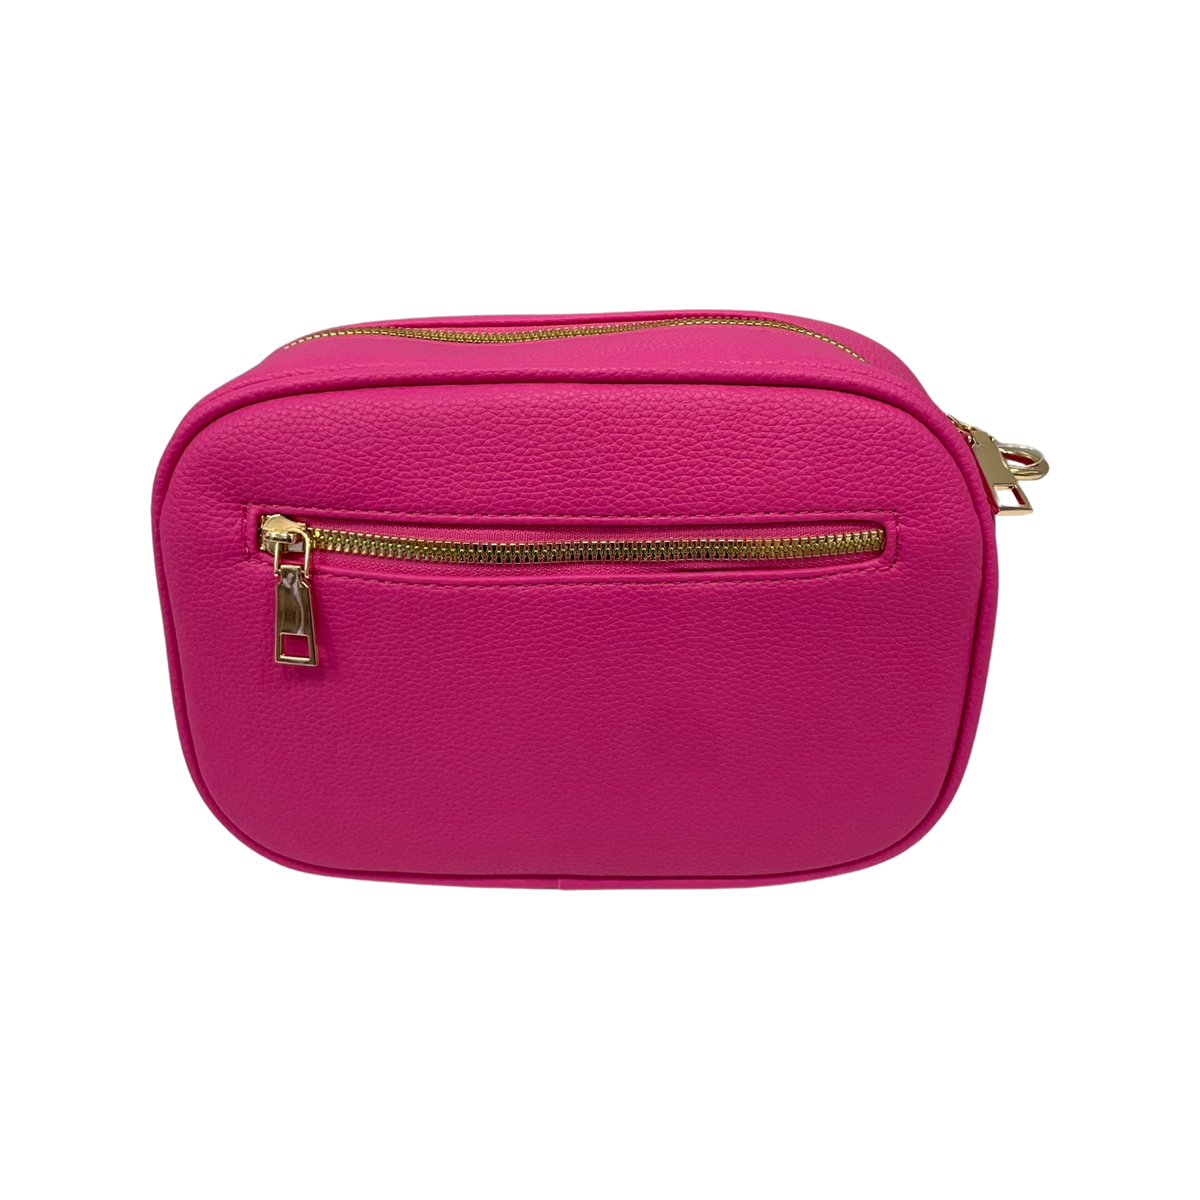 Amelia Handbag in Pink